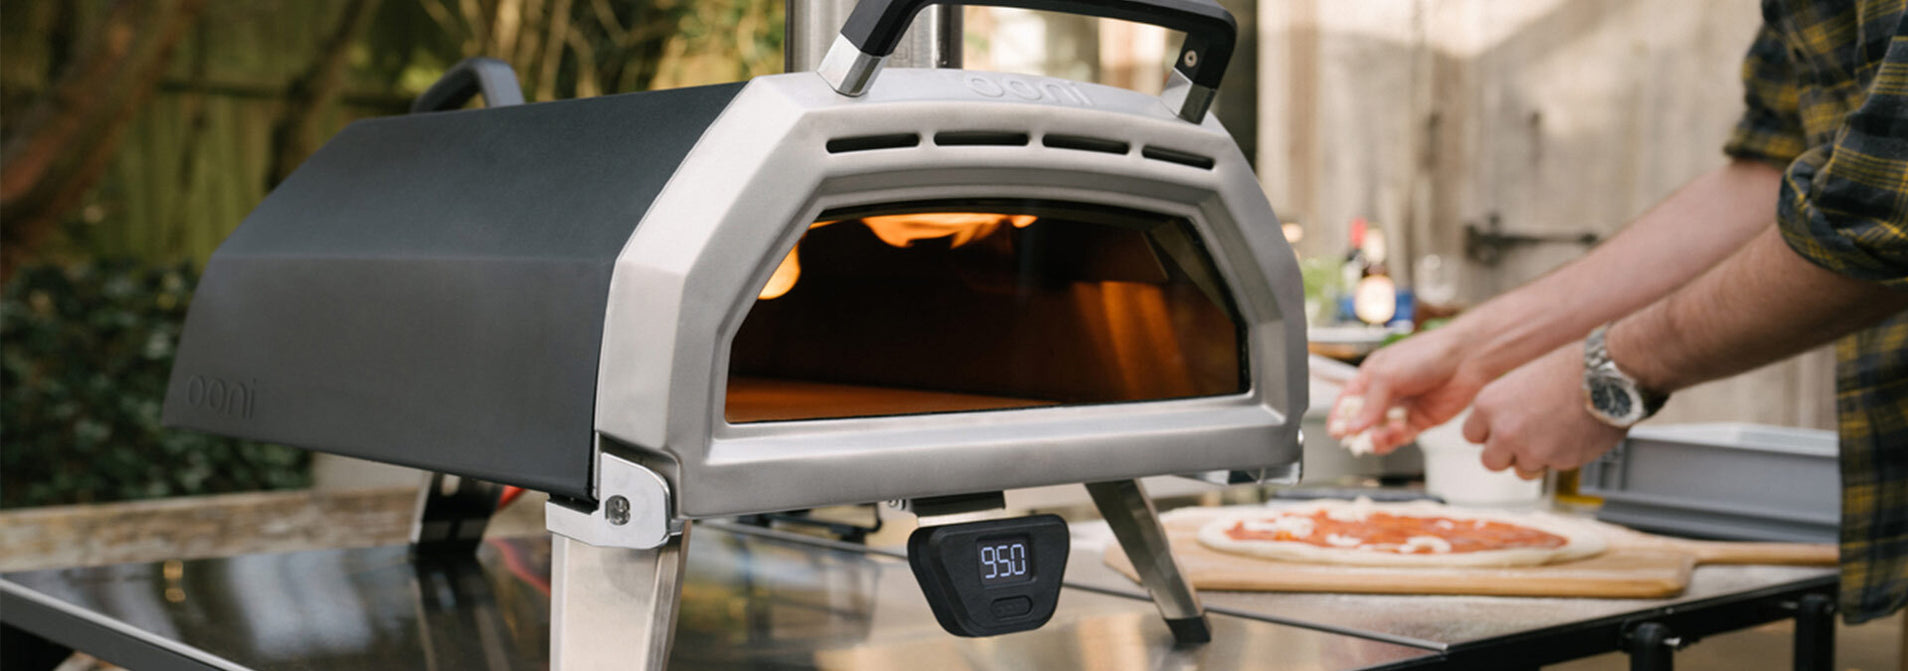 Meet Ooni Karu 16 Multi-fuelled Pizza Oven — Ooni USA